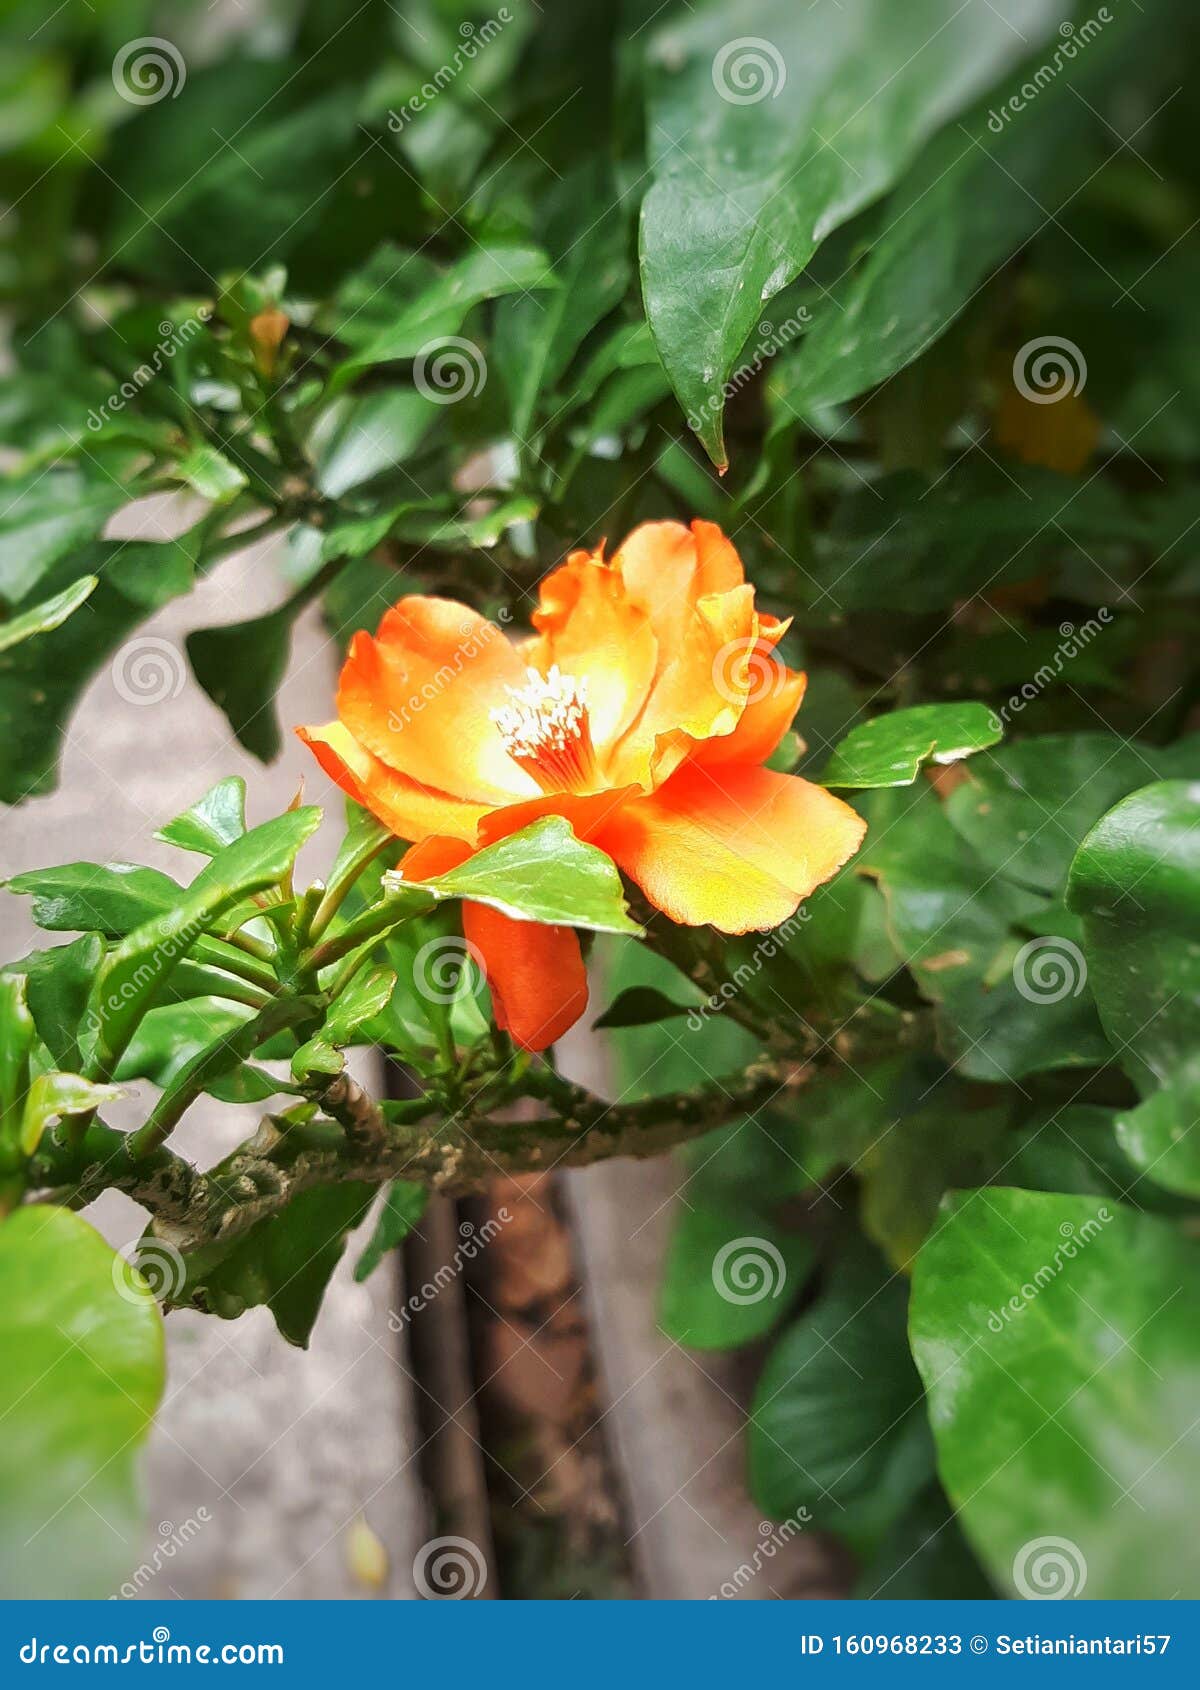 Color Naranja De La Flor De Una Sola Camelia También Conocida Como Camellia  Japonesa Imagen de archivo - Imagen de exterior, planta: 160968233